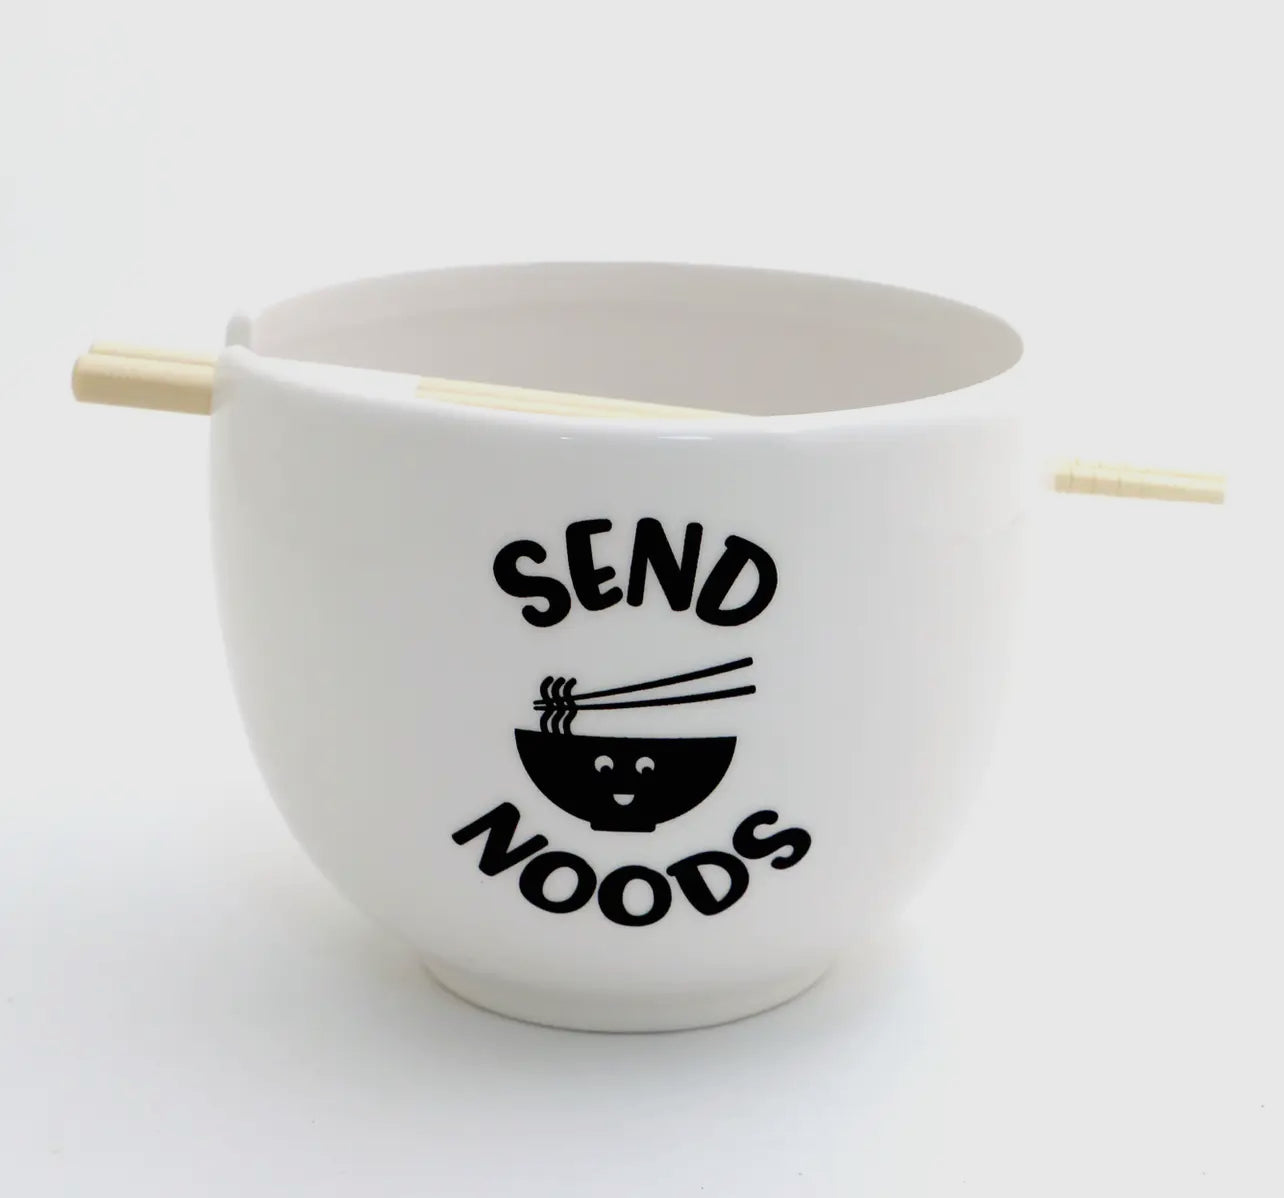 Send Noods Noodle Bowl